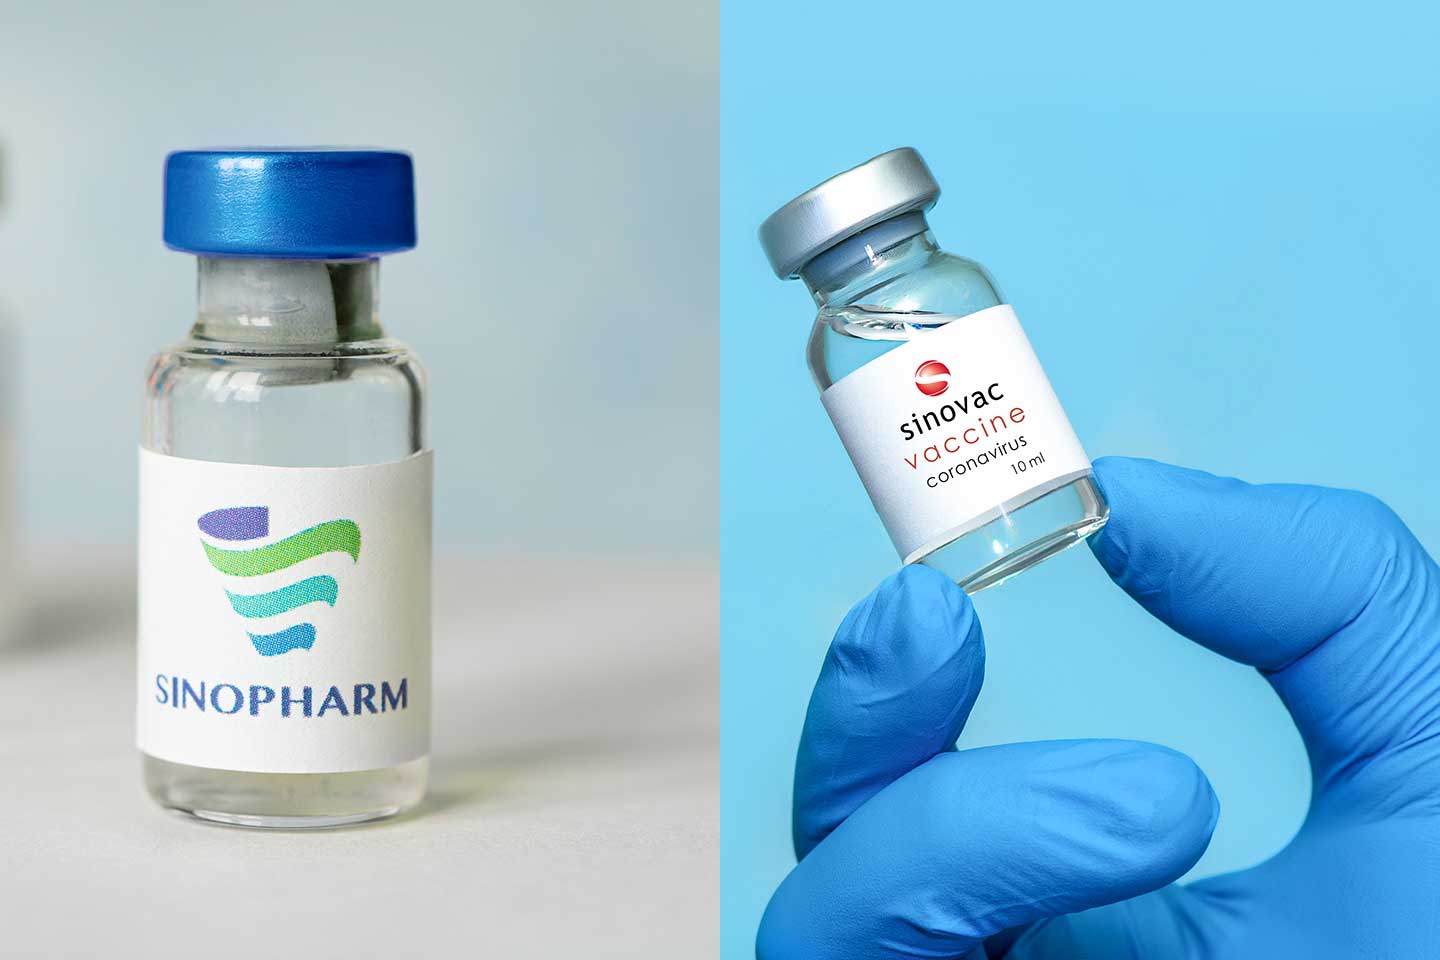 Sinopharm và SinoVac là 2 loại vắc xin Covid-19 của Trung Quốc được xuất khẩu nhiều nhất. Ảnh: Shutterstock